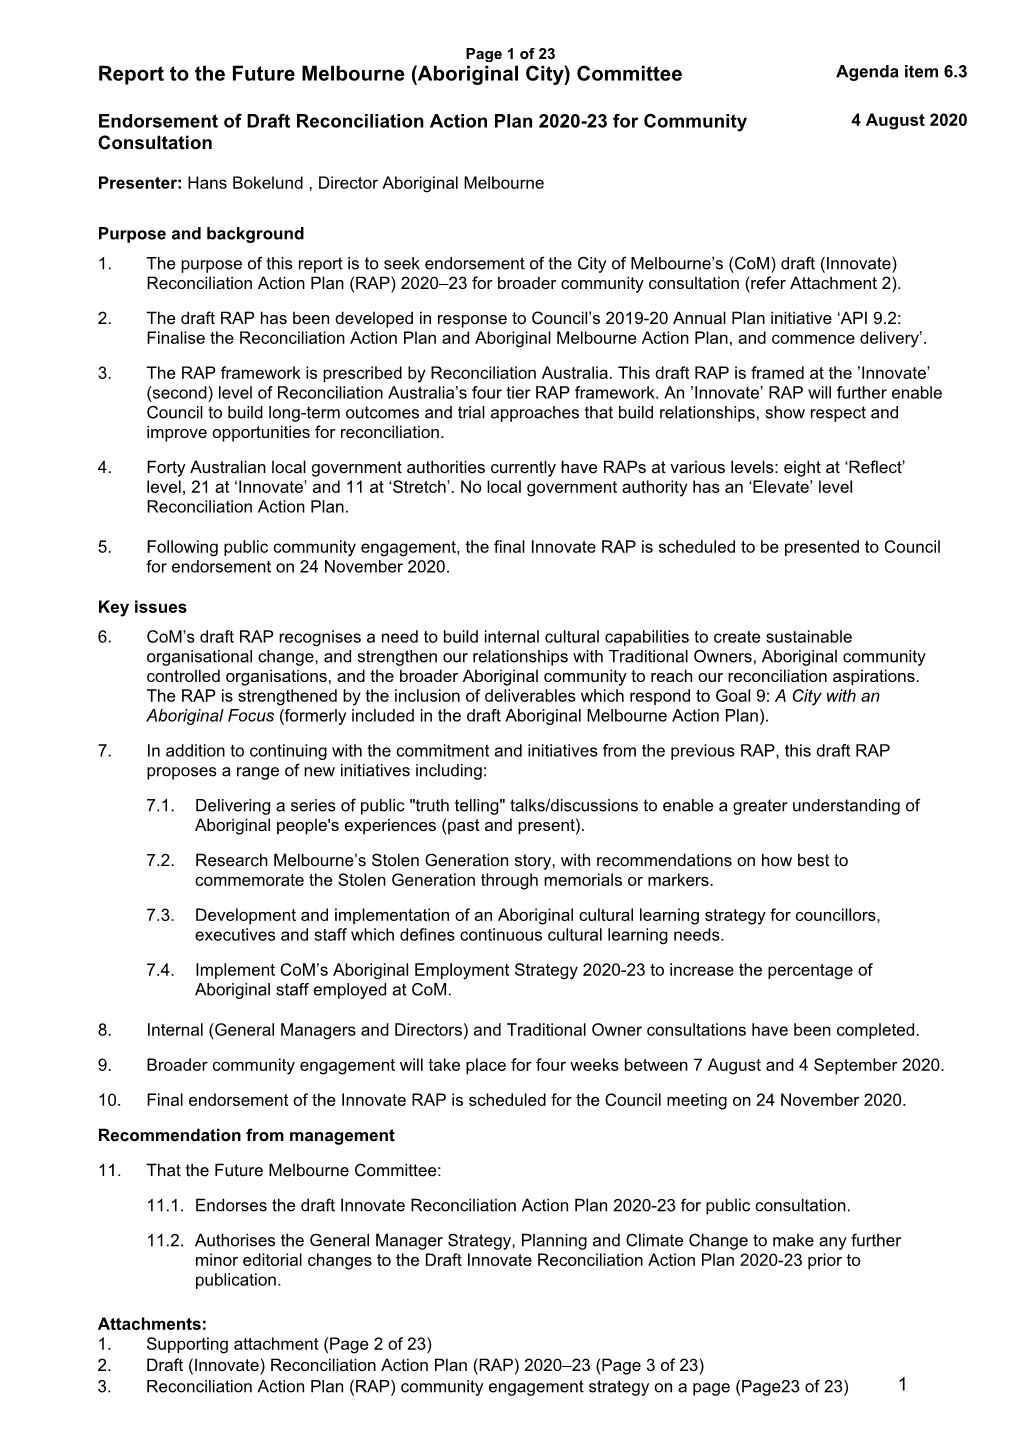 Report to the Future Melbourne (Aboriginal City) Committee Agenda Item 6.3